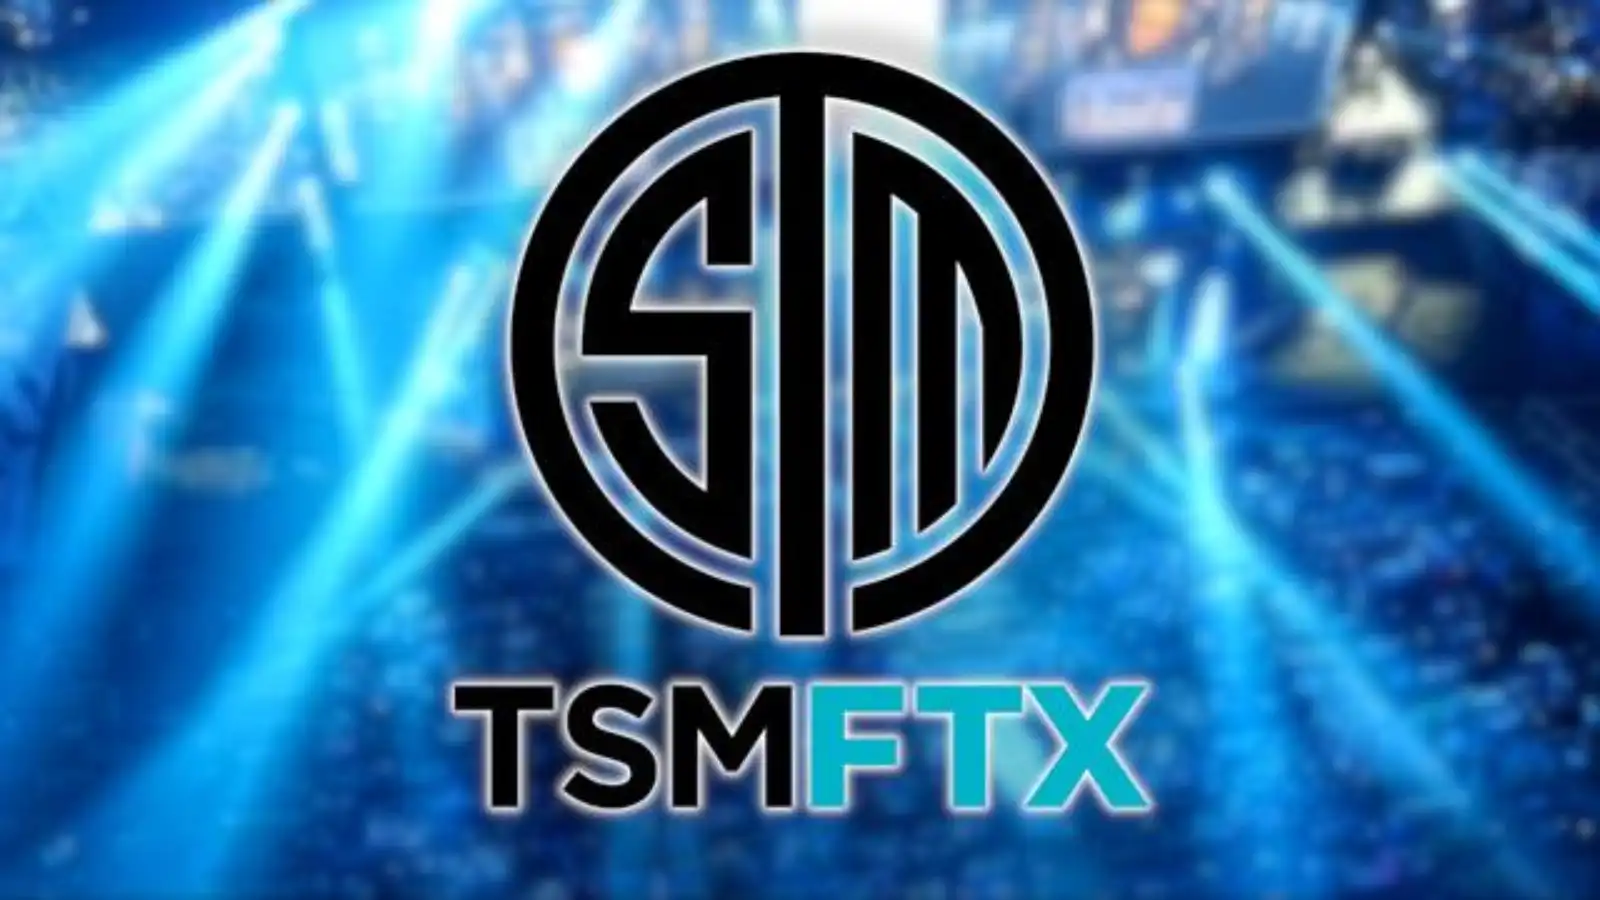 TSM will make a long-awaited return to CS:GO in 2023